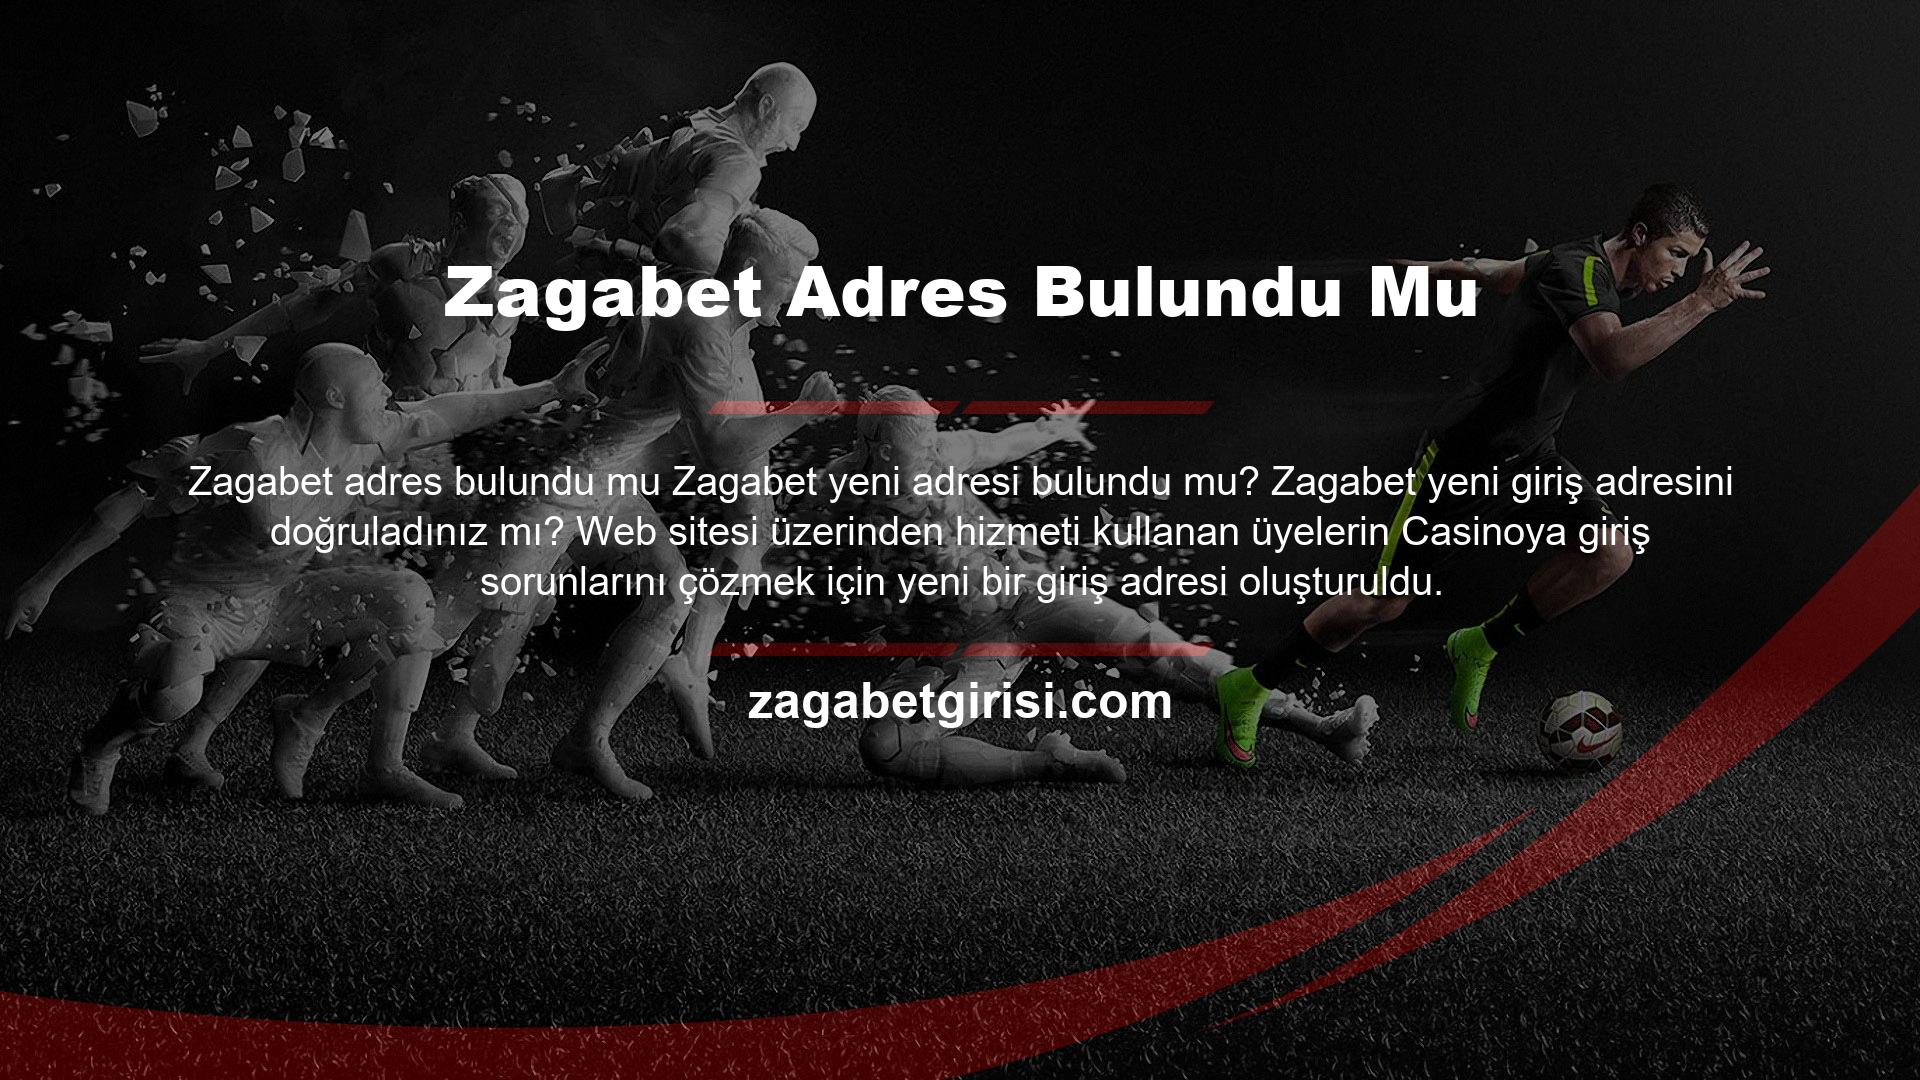 Önceki uygulama tekrar devreye alınarak yeni Zagabet giriş adresi ifadesi kullanıcıya gösterildi